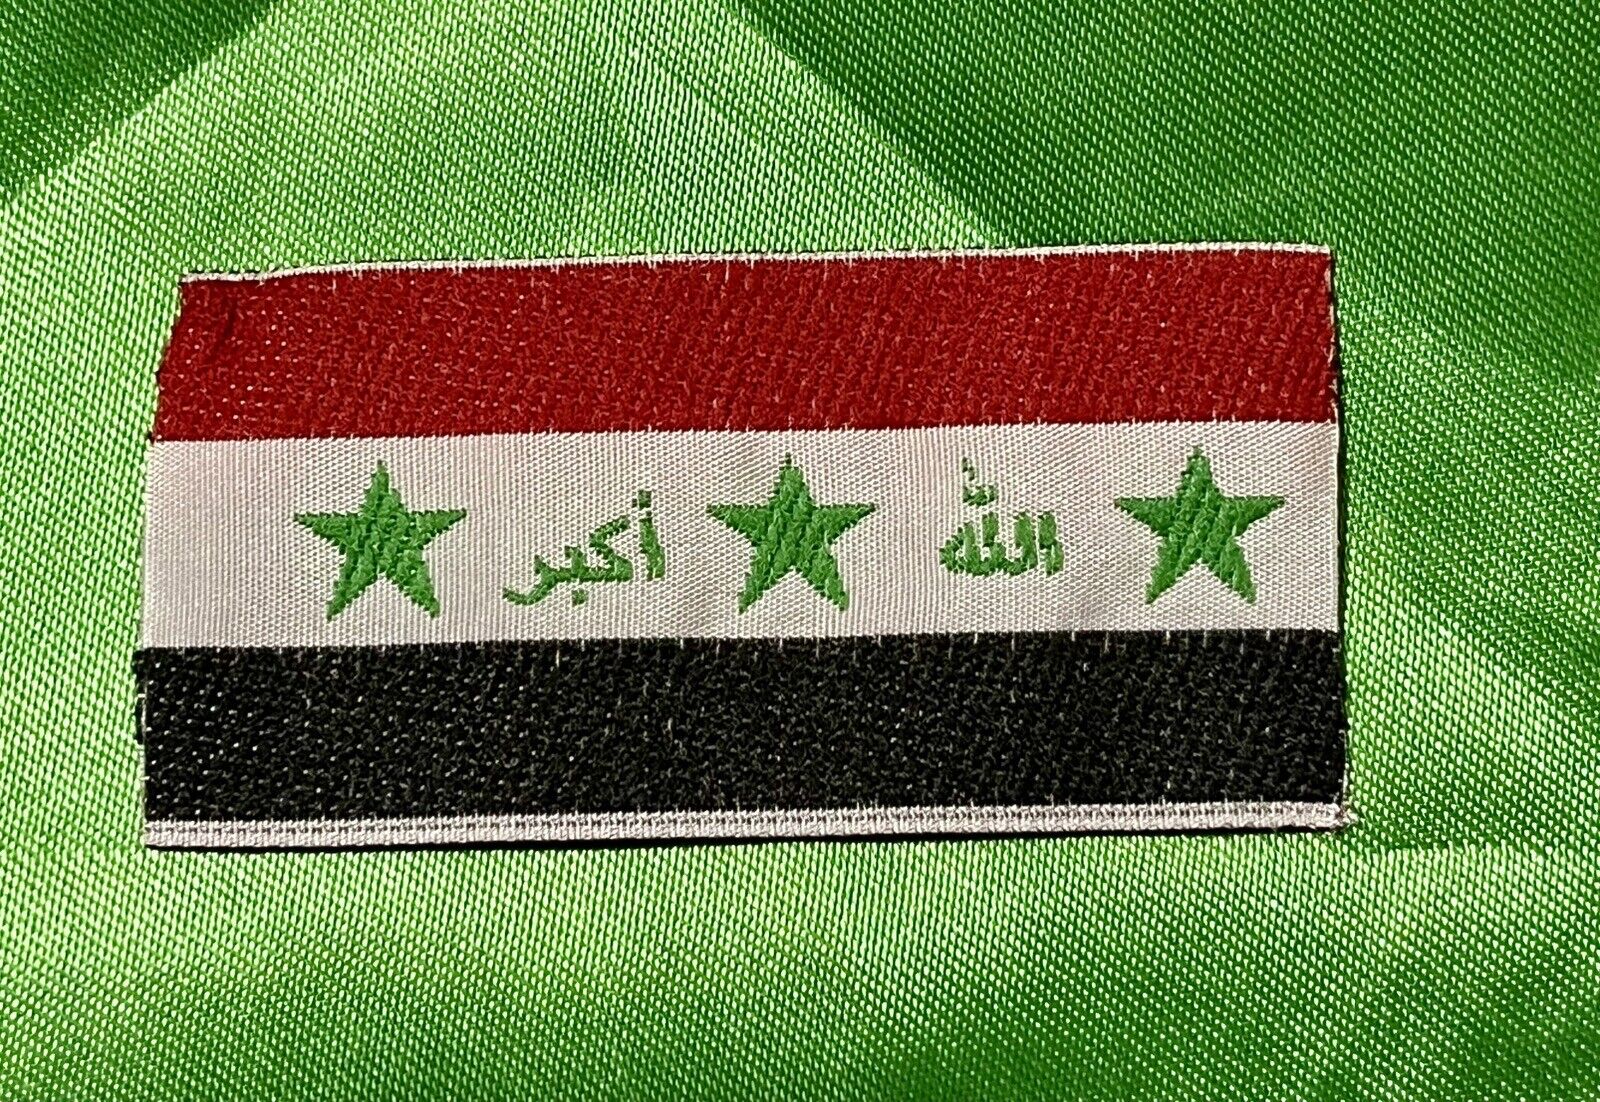 IRAQ/VINTAGE IRAQI FLAG, SADDAM ERA,1995-2003